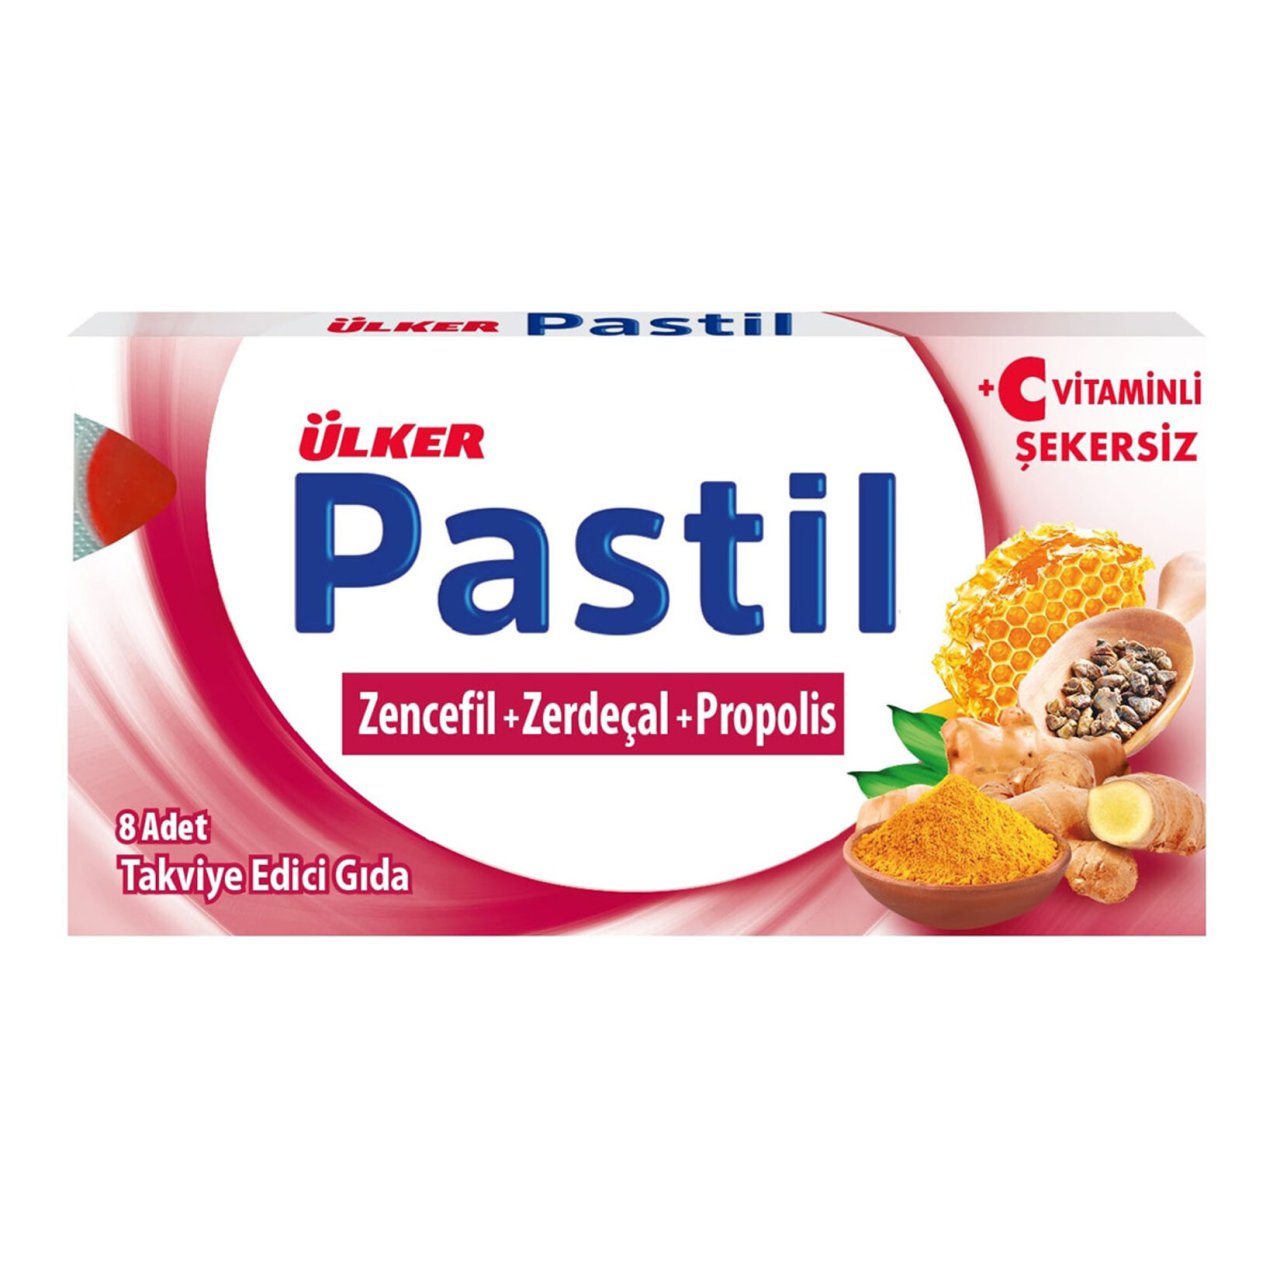 Ülker Pastil Zencefil+Zerdeçal+Propolis